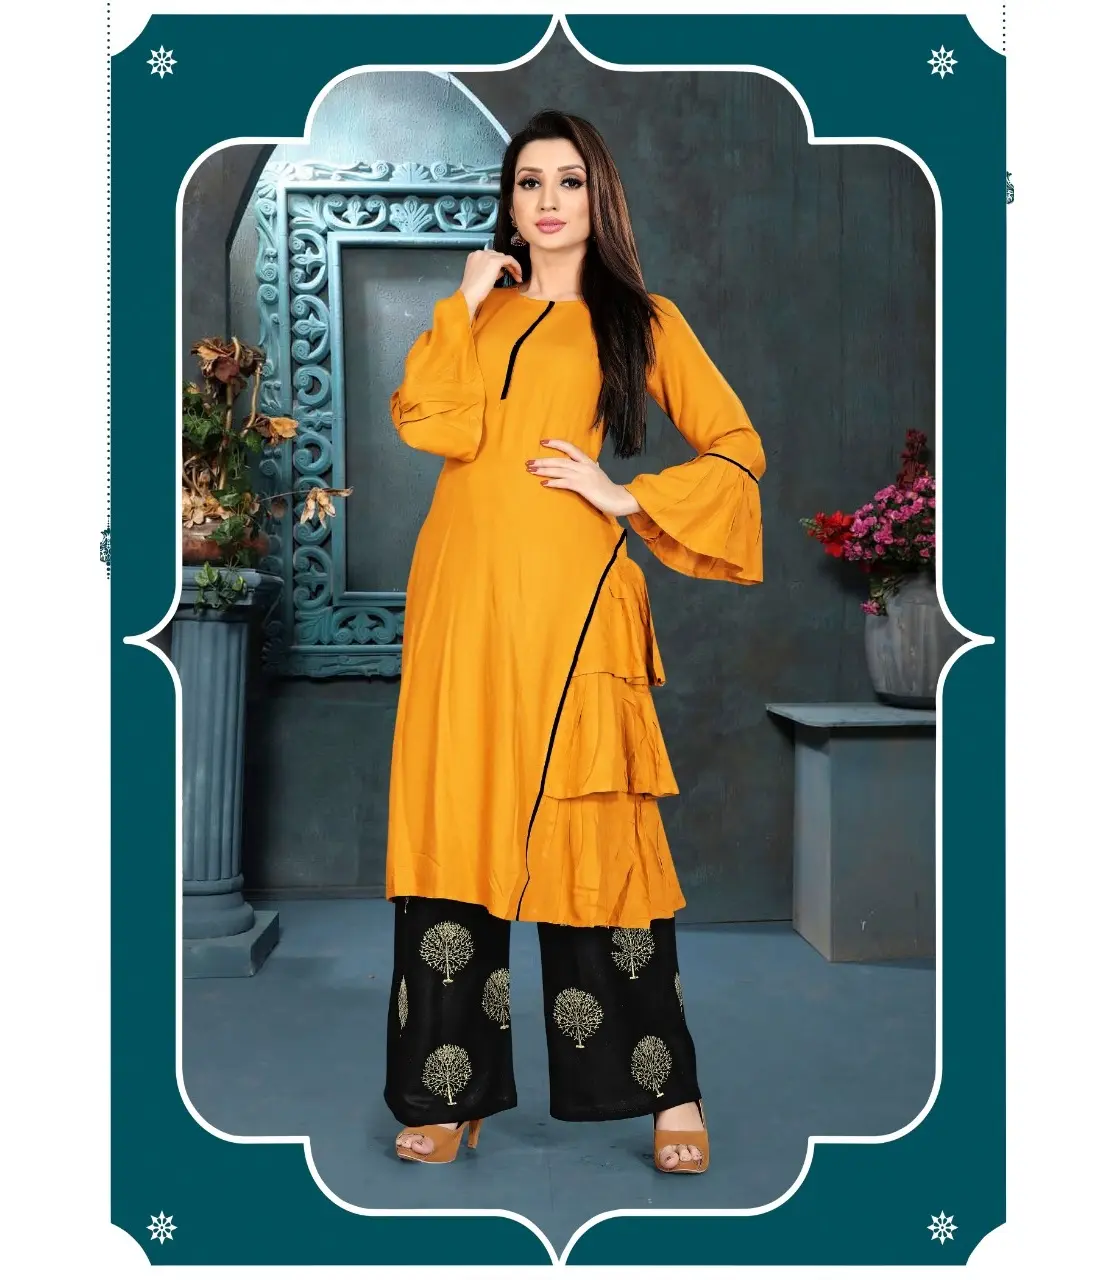 Senhoras kurtis algodão reyon mulheres anarkali desgaste pronto baixo preço mais recente design de moda com dupatta jackate vestido indiano por atacado